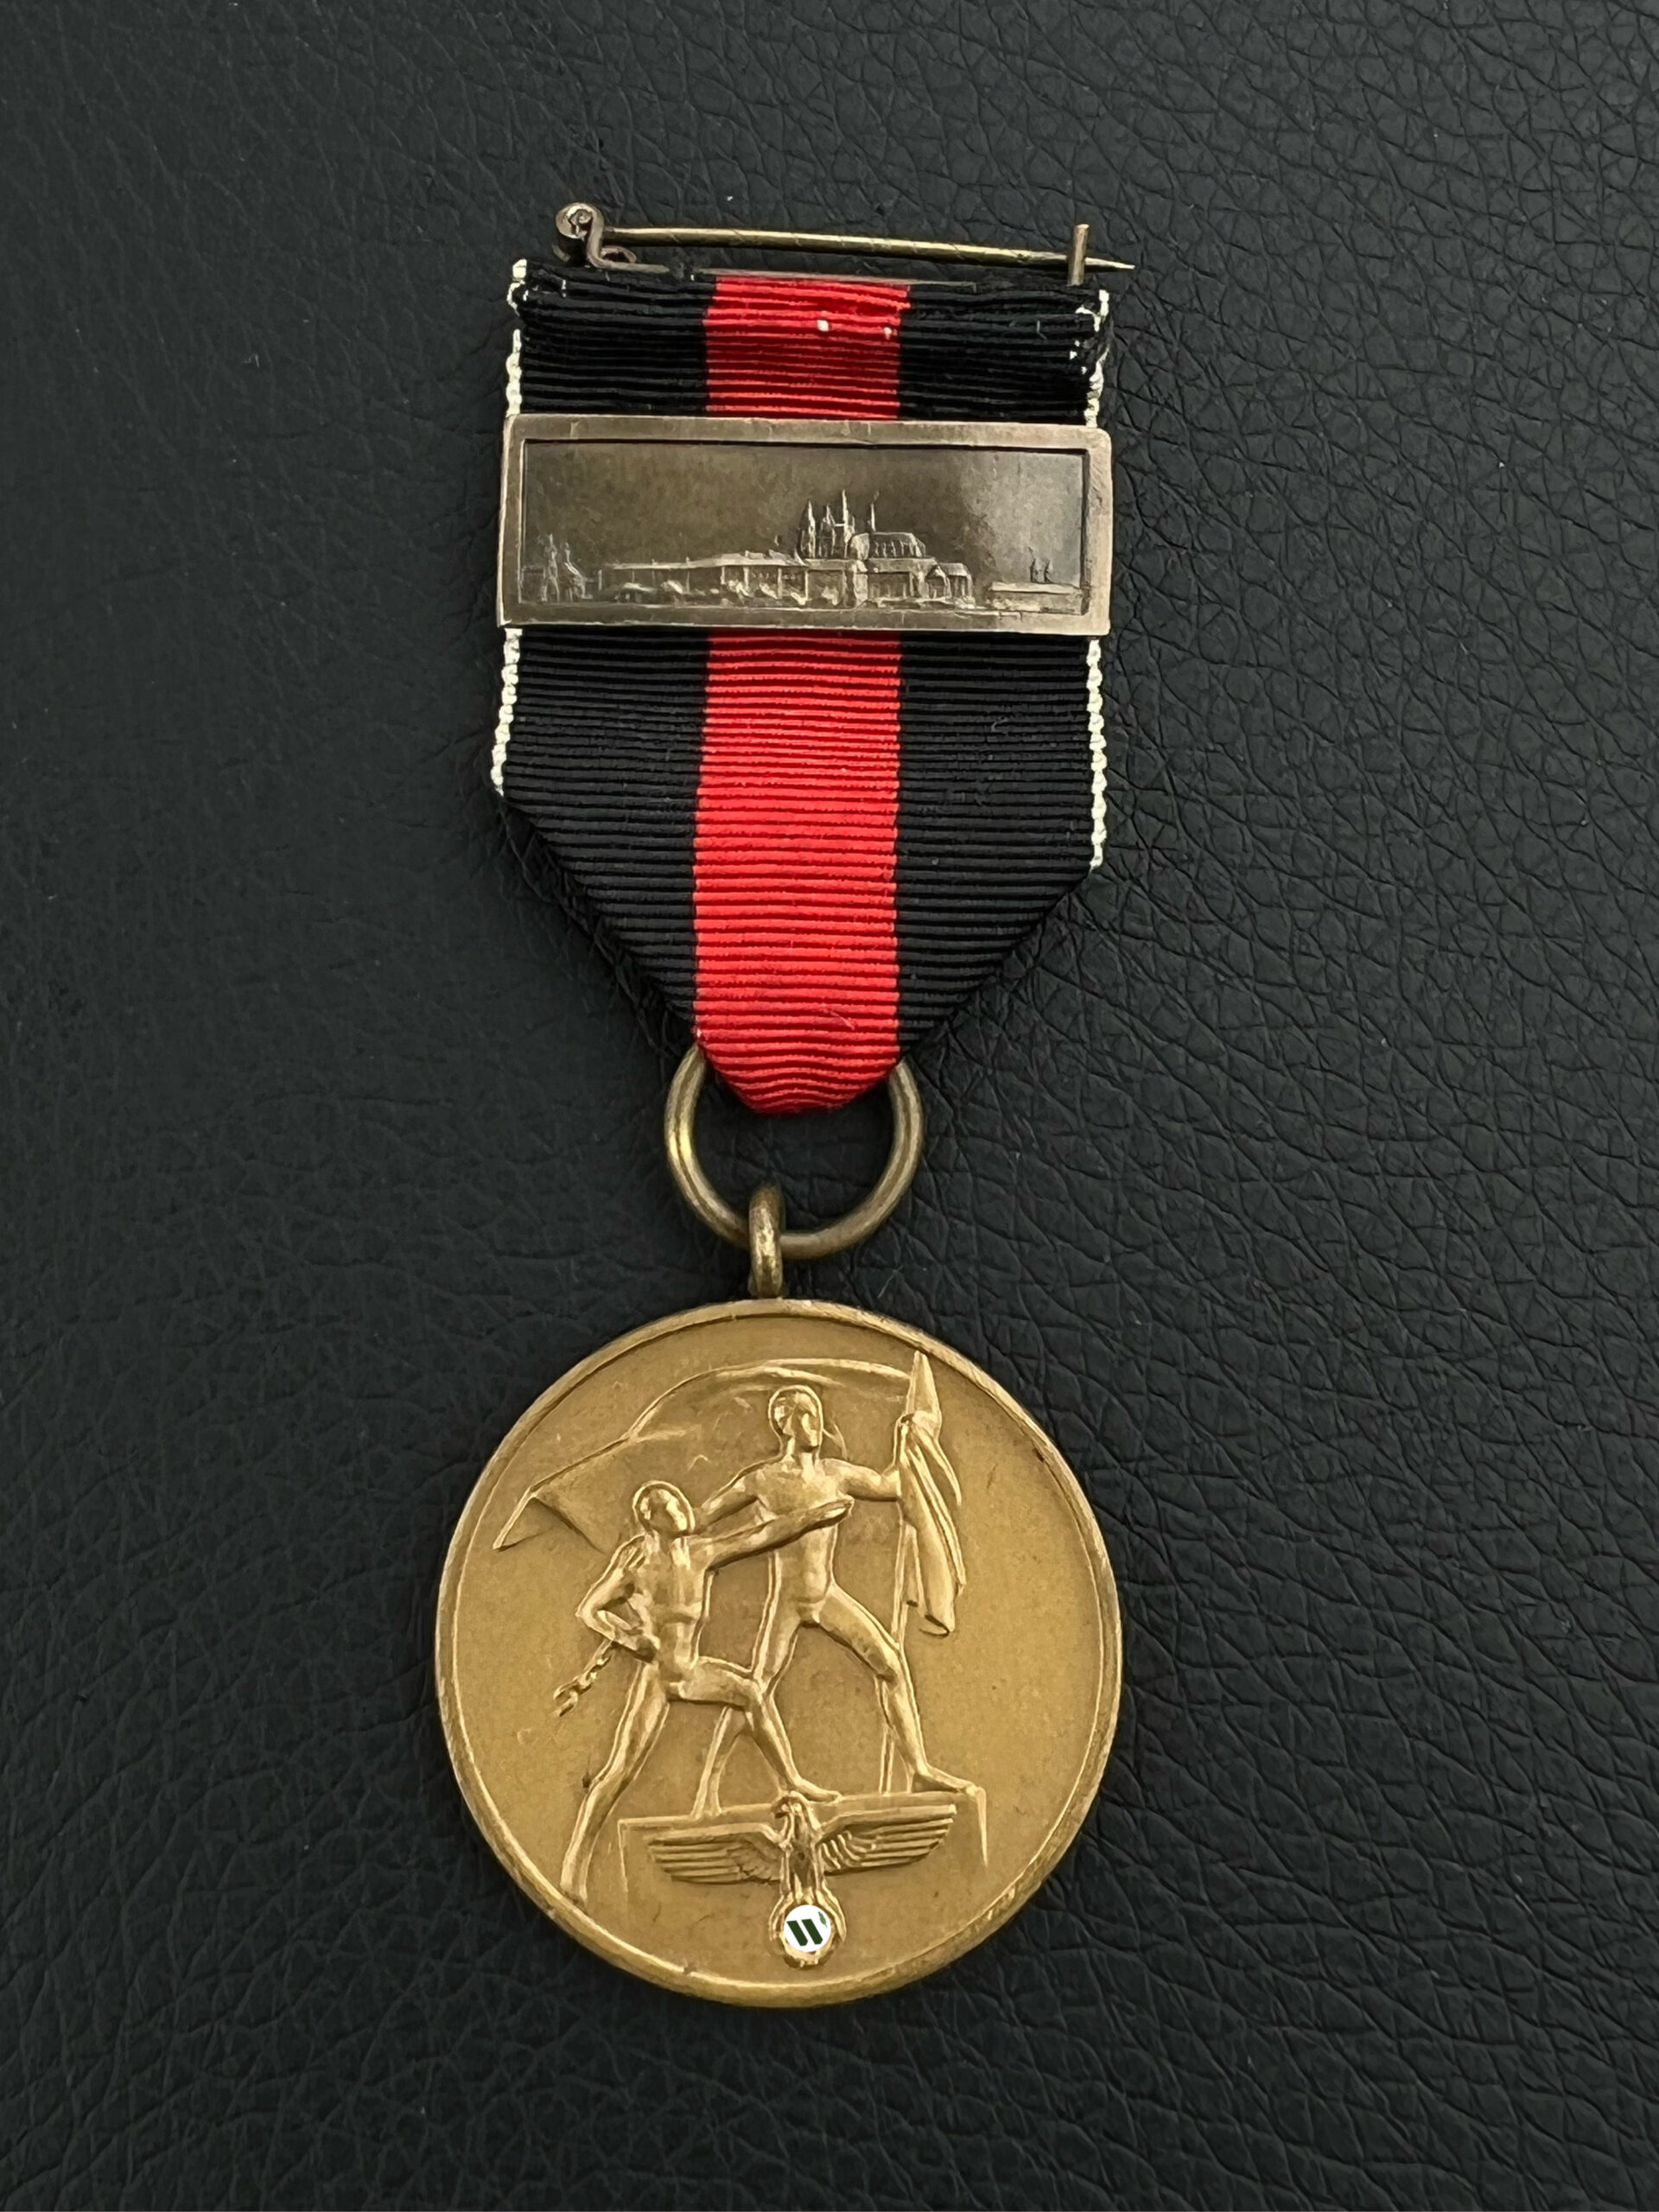 Медаль «В память 1 октября 1938 года» с планкой «Прагебург».